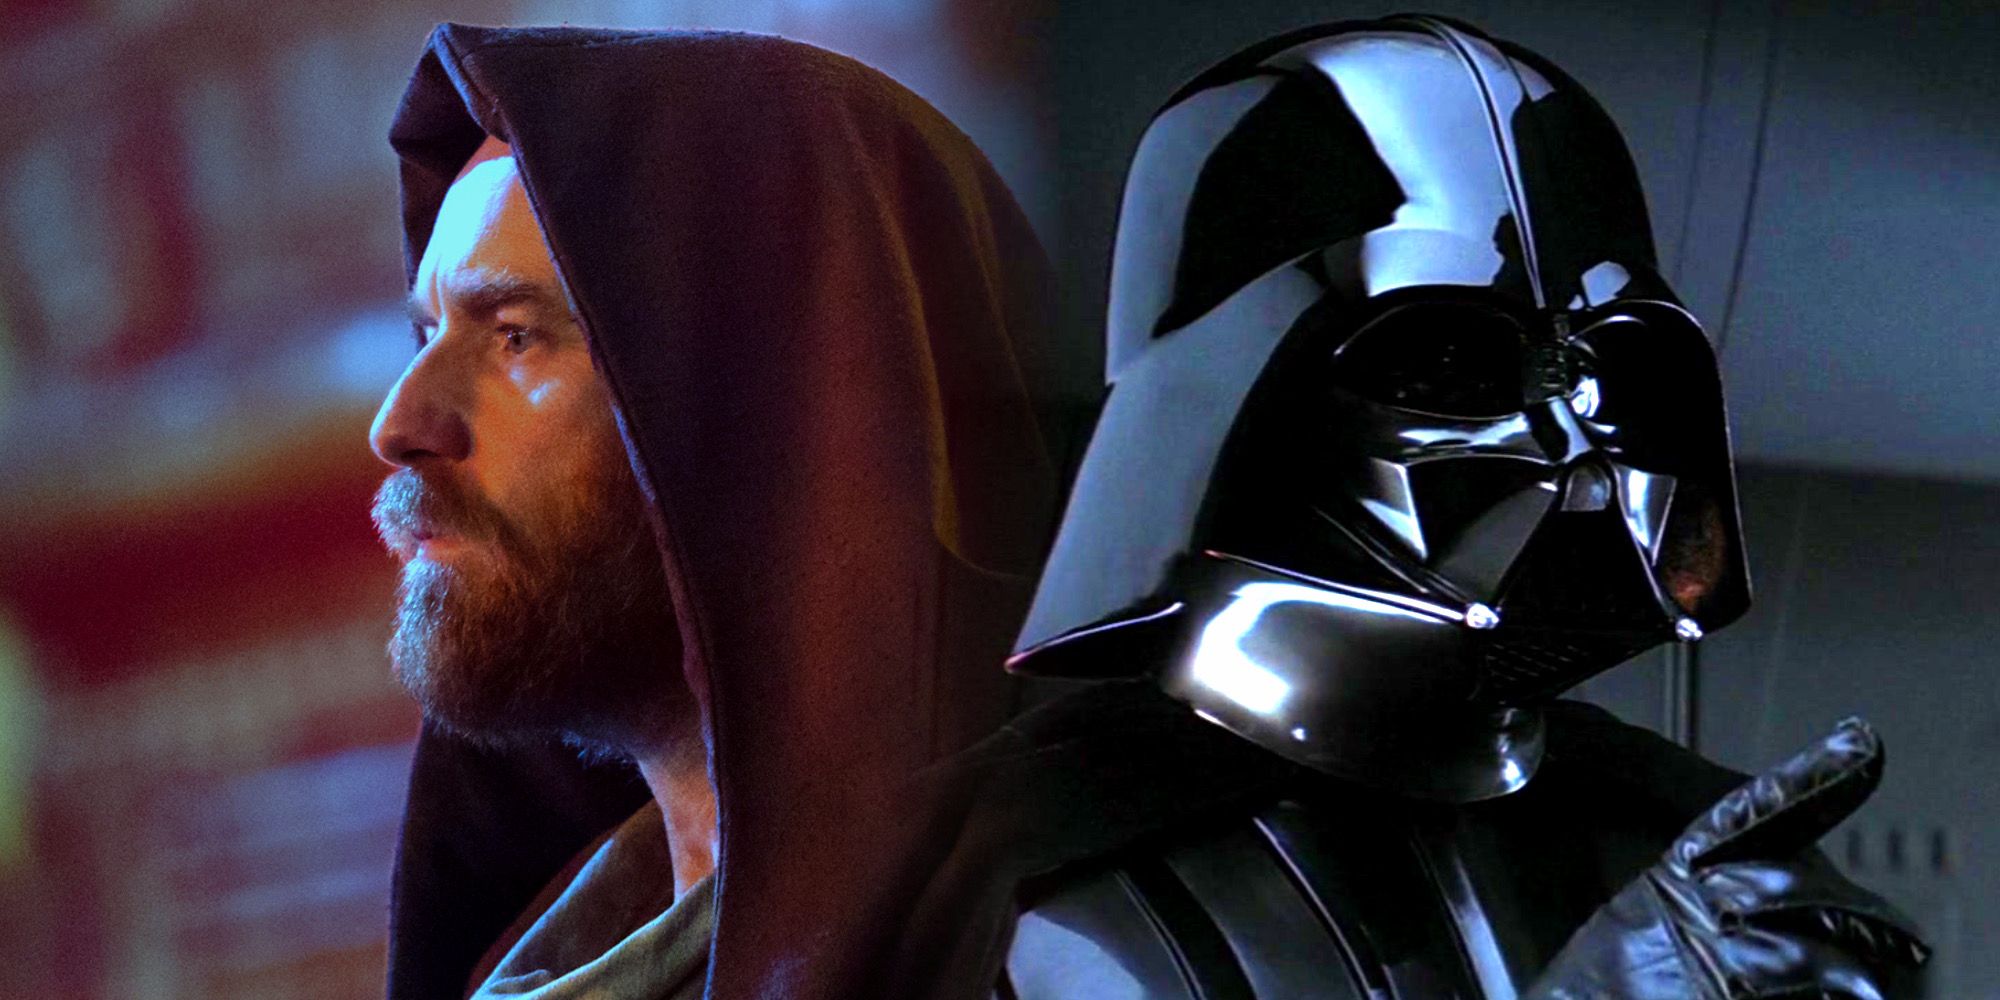 Obi-Wan Kenobi in Kenobi and Darth Vader in The Empire Strikes Back